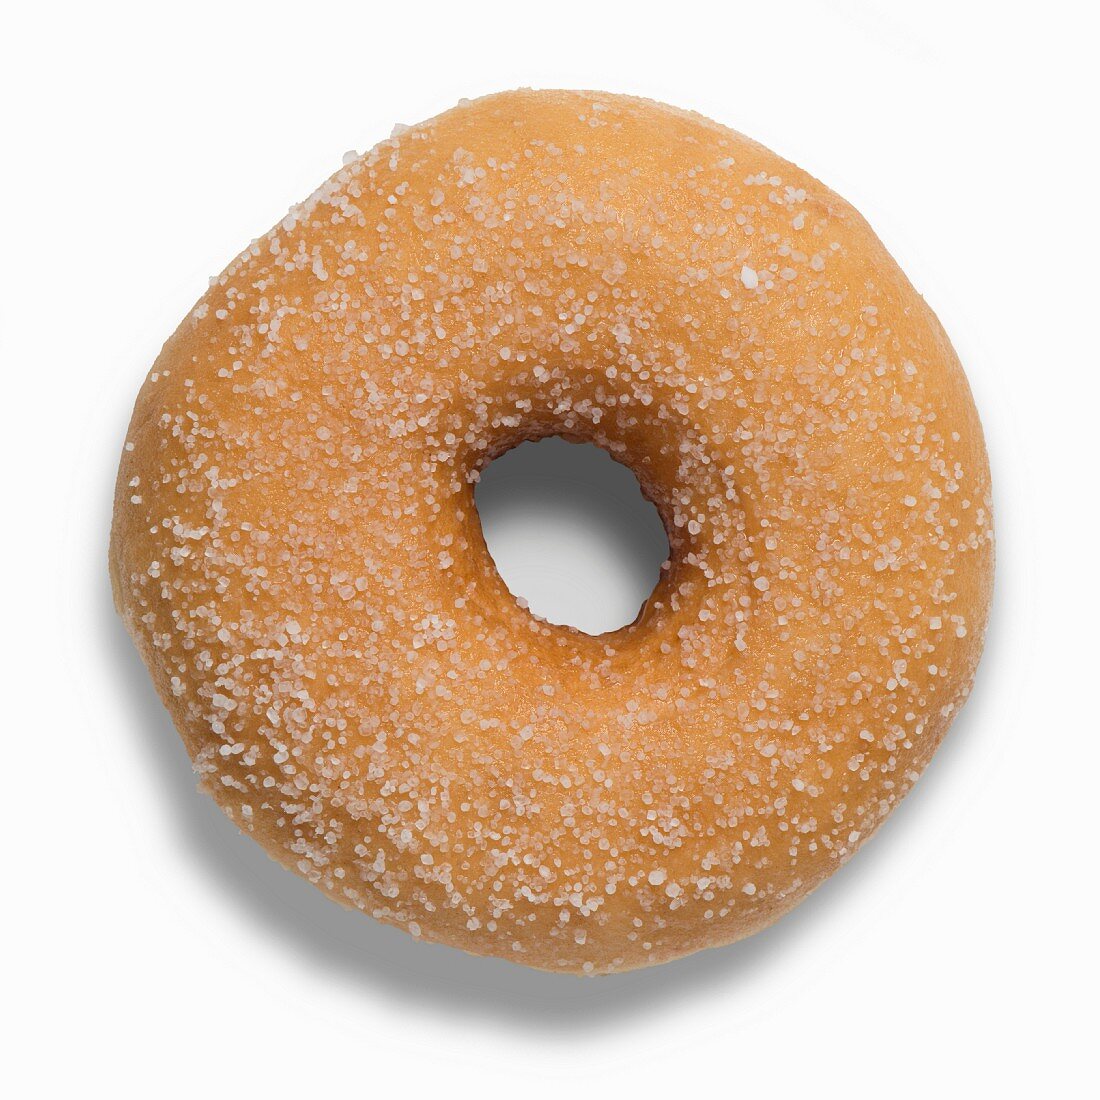 A golden brown sugared doughnut